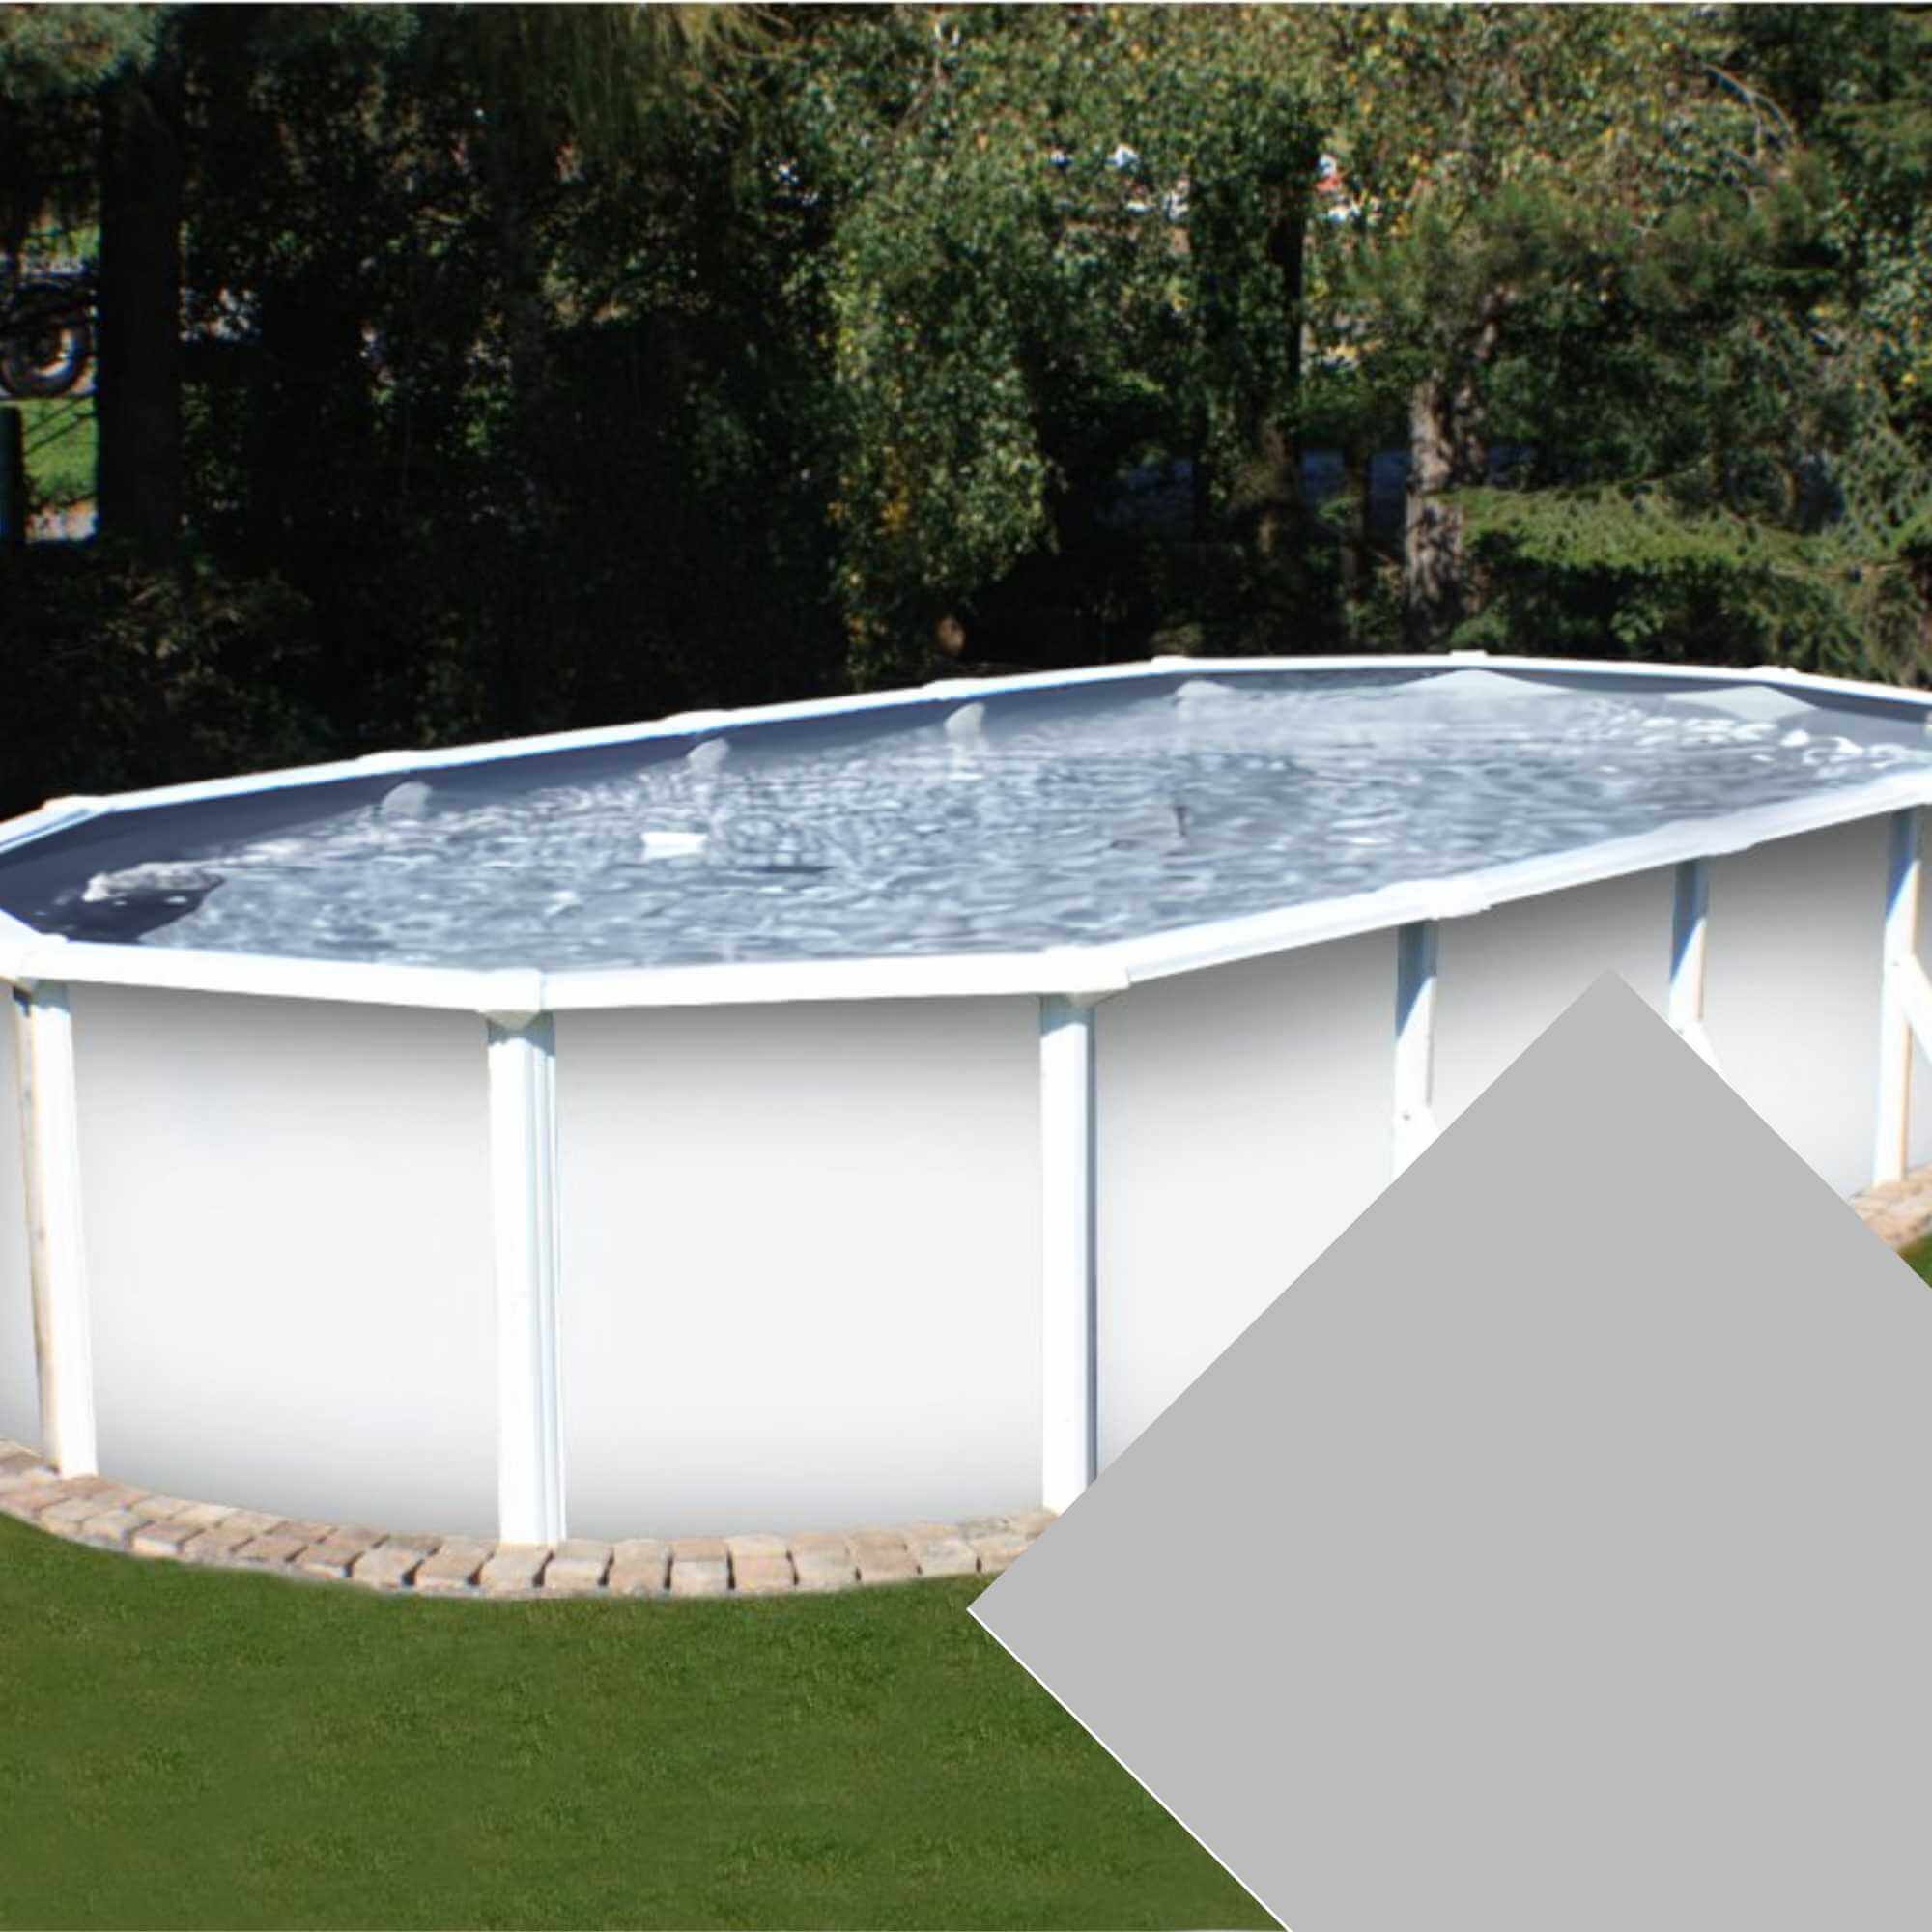 Planet Pool Náhradní bazénová fólie Grey pro bazén 7,3 m x 3,7 m x 1,2 m - šedá barva